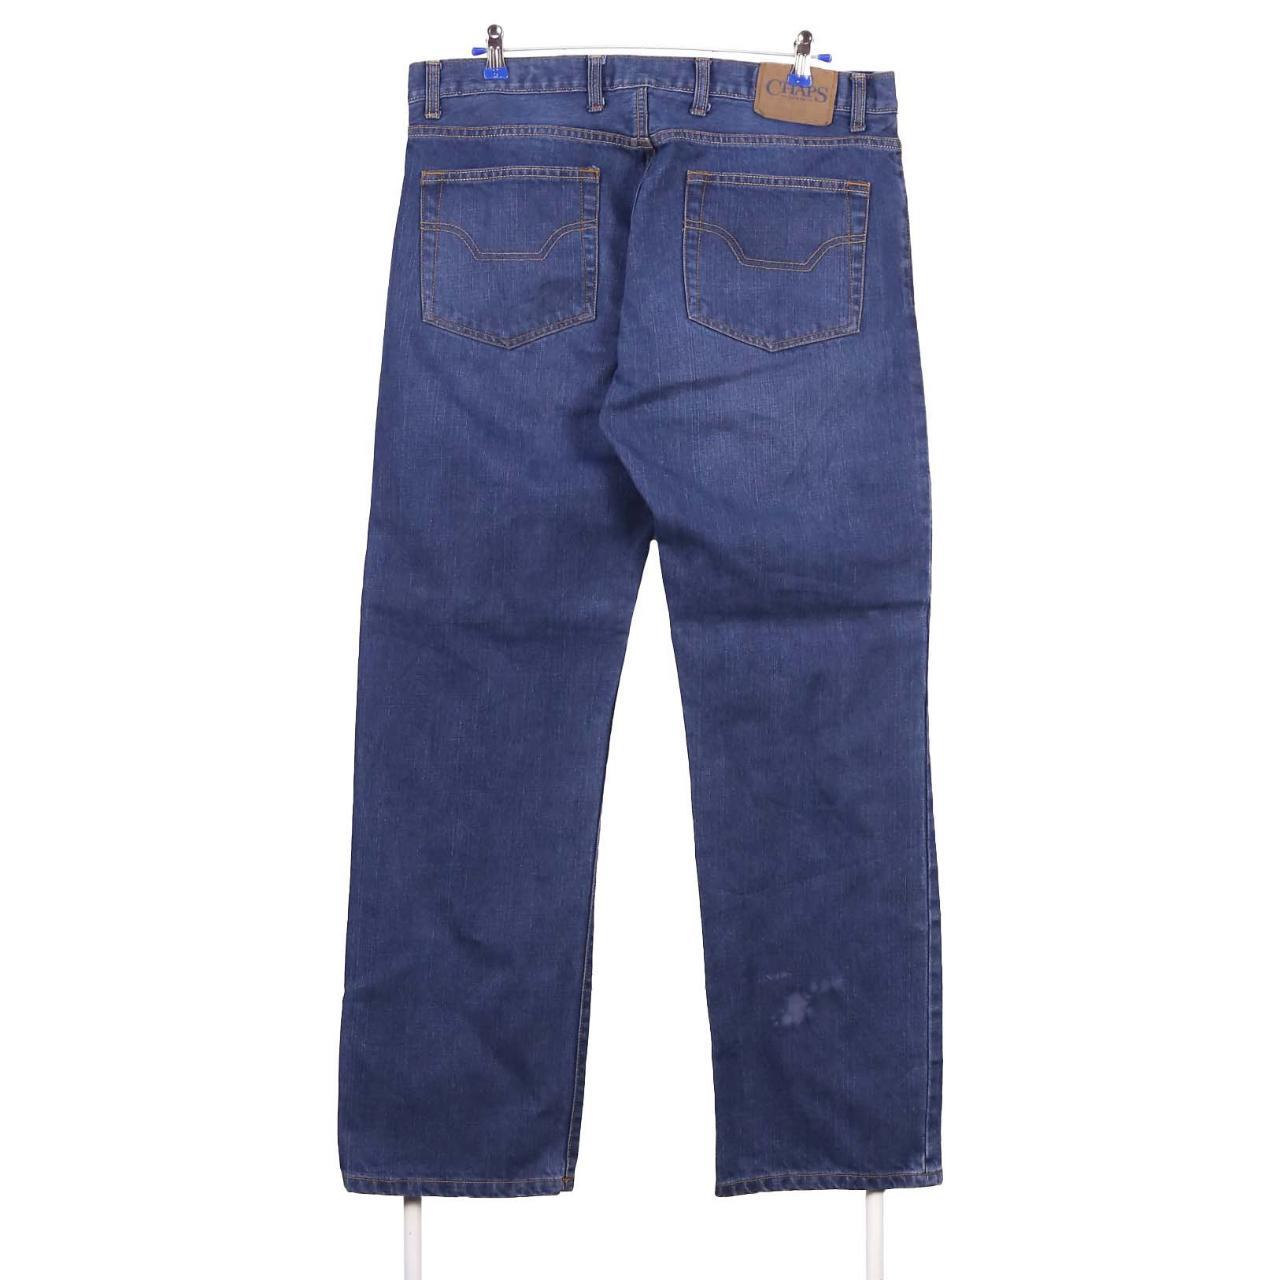 Vintage Chaps Jeans / Pants Chaps 90's Jeans /... - Depop